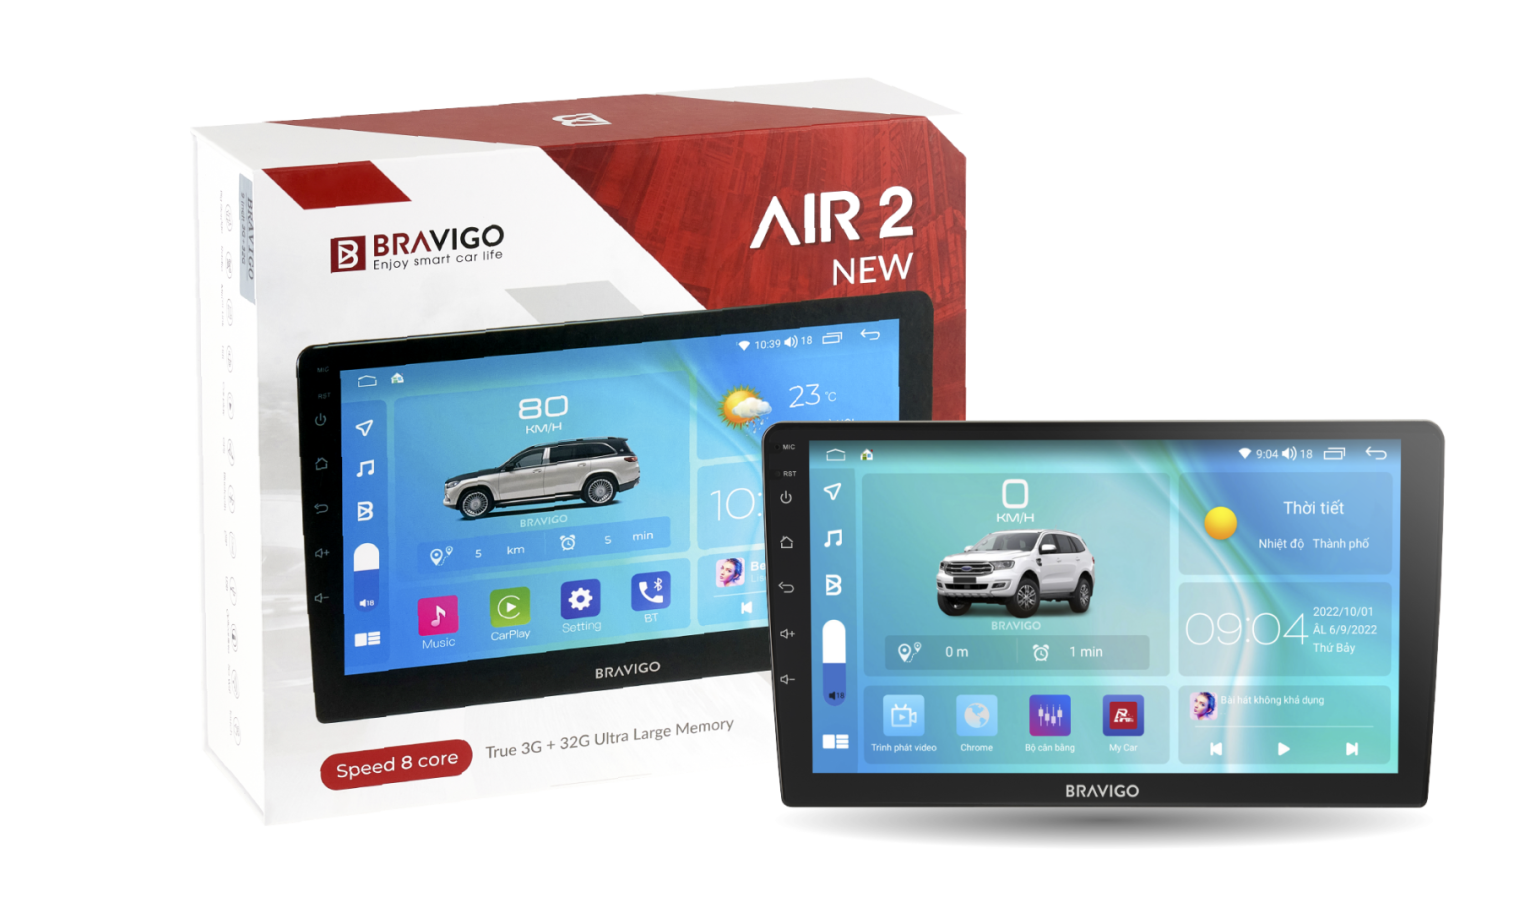 màn hình android Bravigo air 2 new